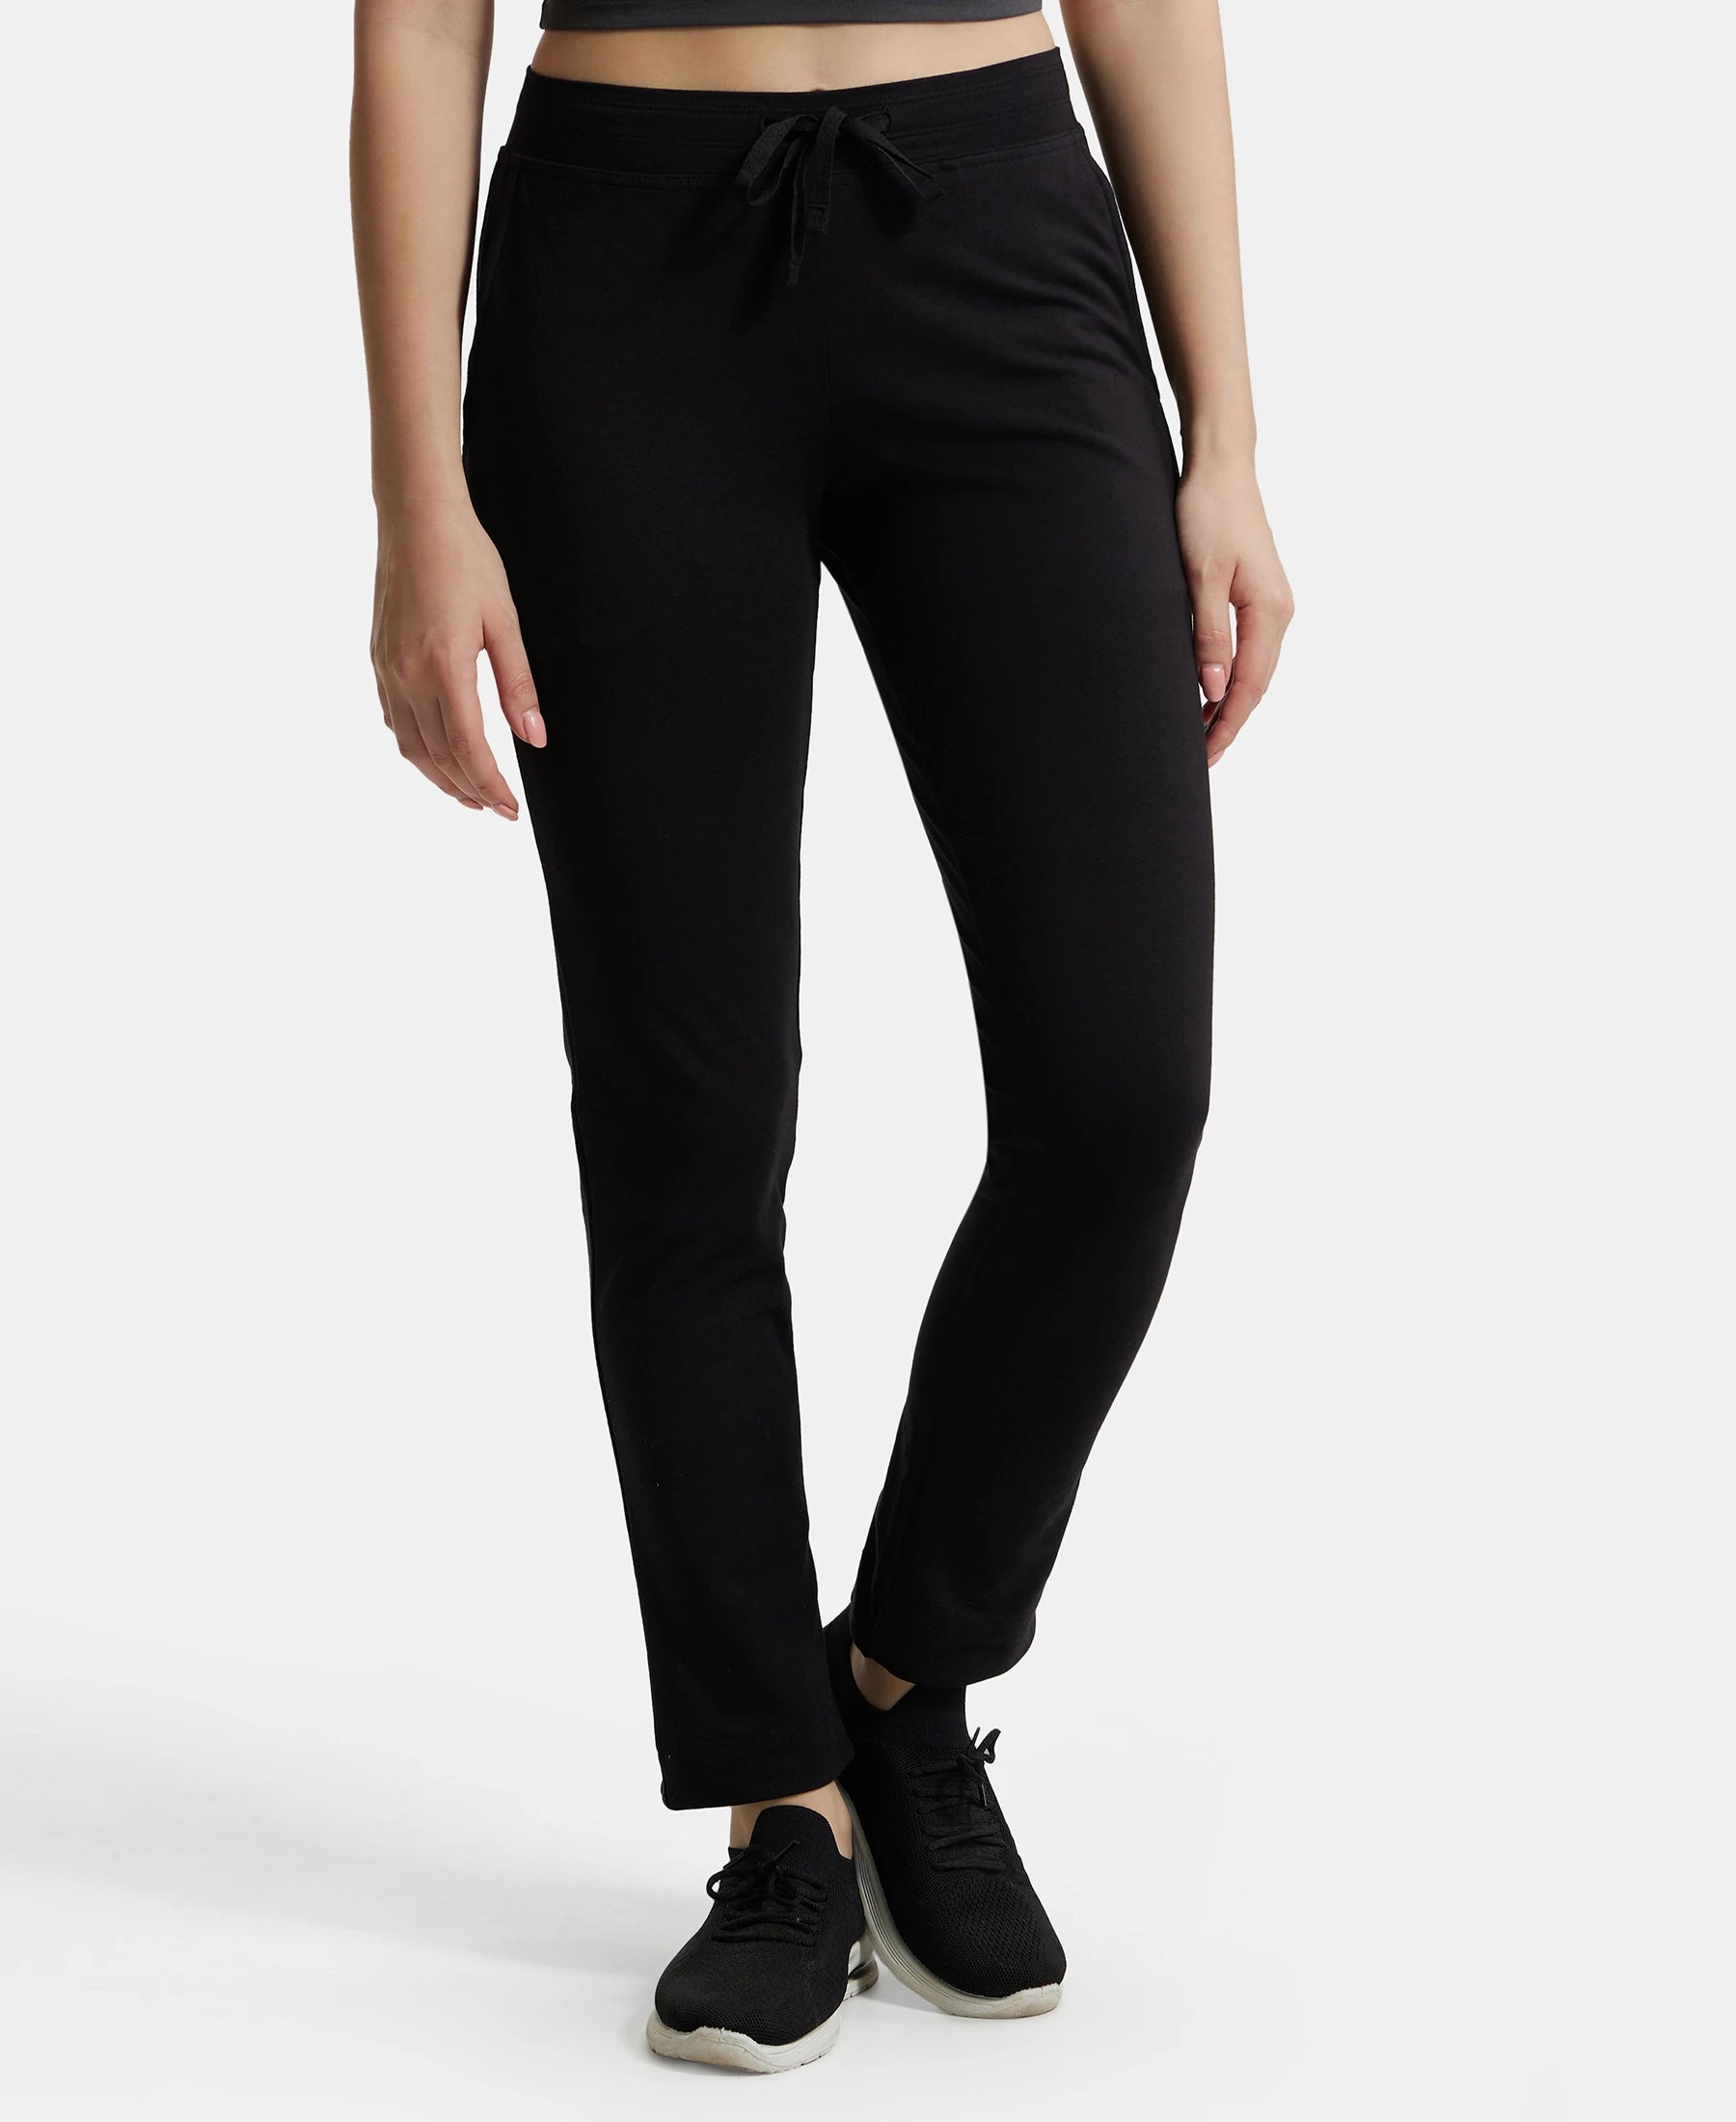 Buy Jockey Black Lounge Pants - Style Number - 1301 online